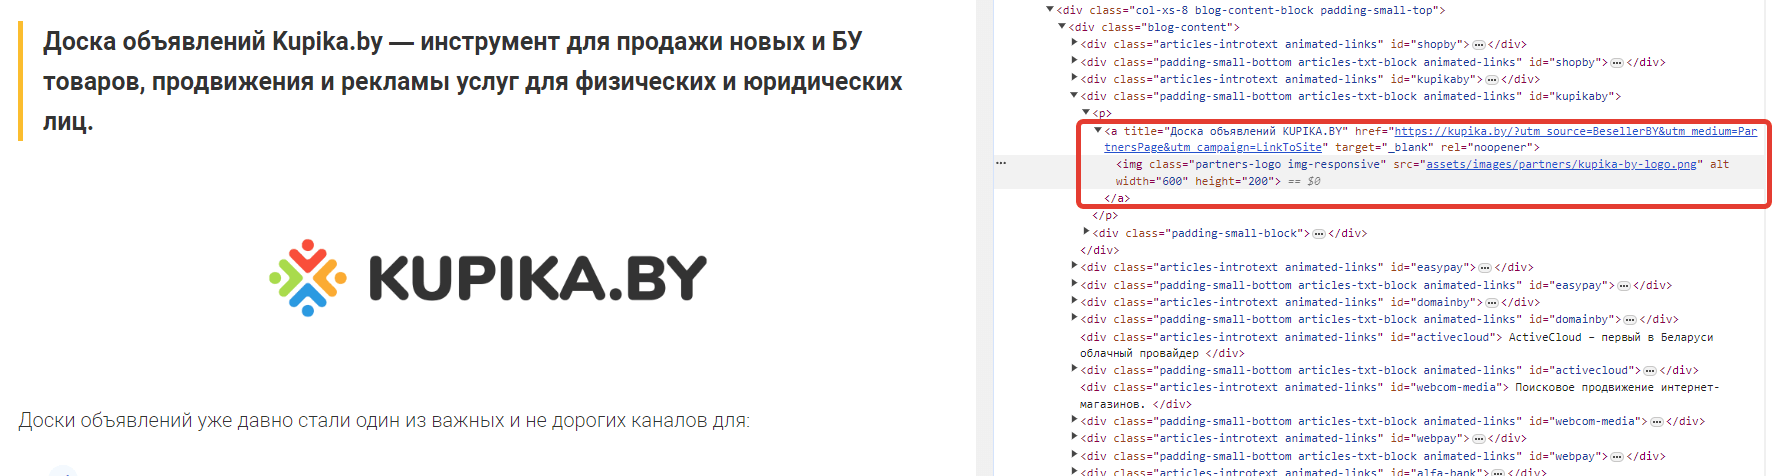 Пример ссылки в коде страницы сайта